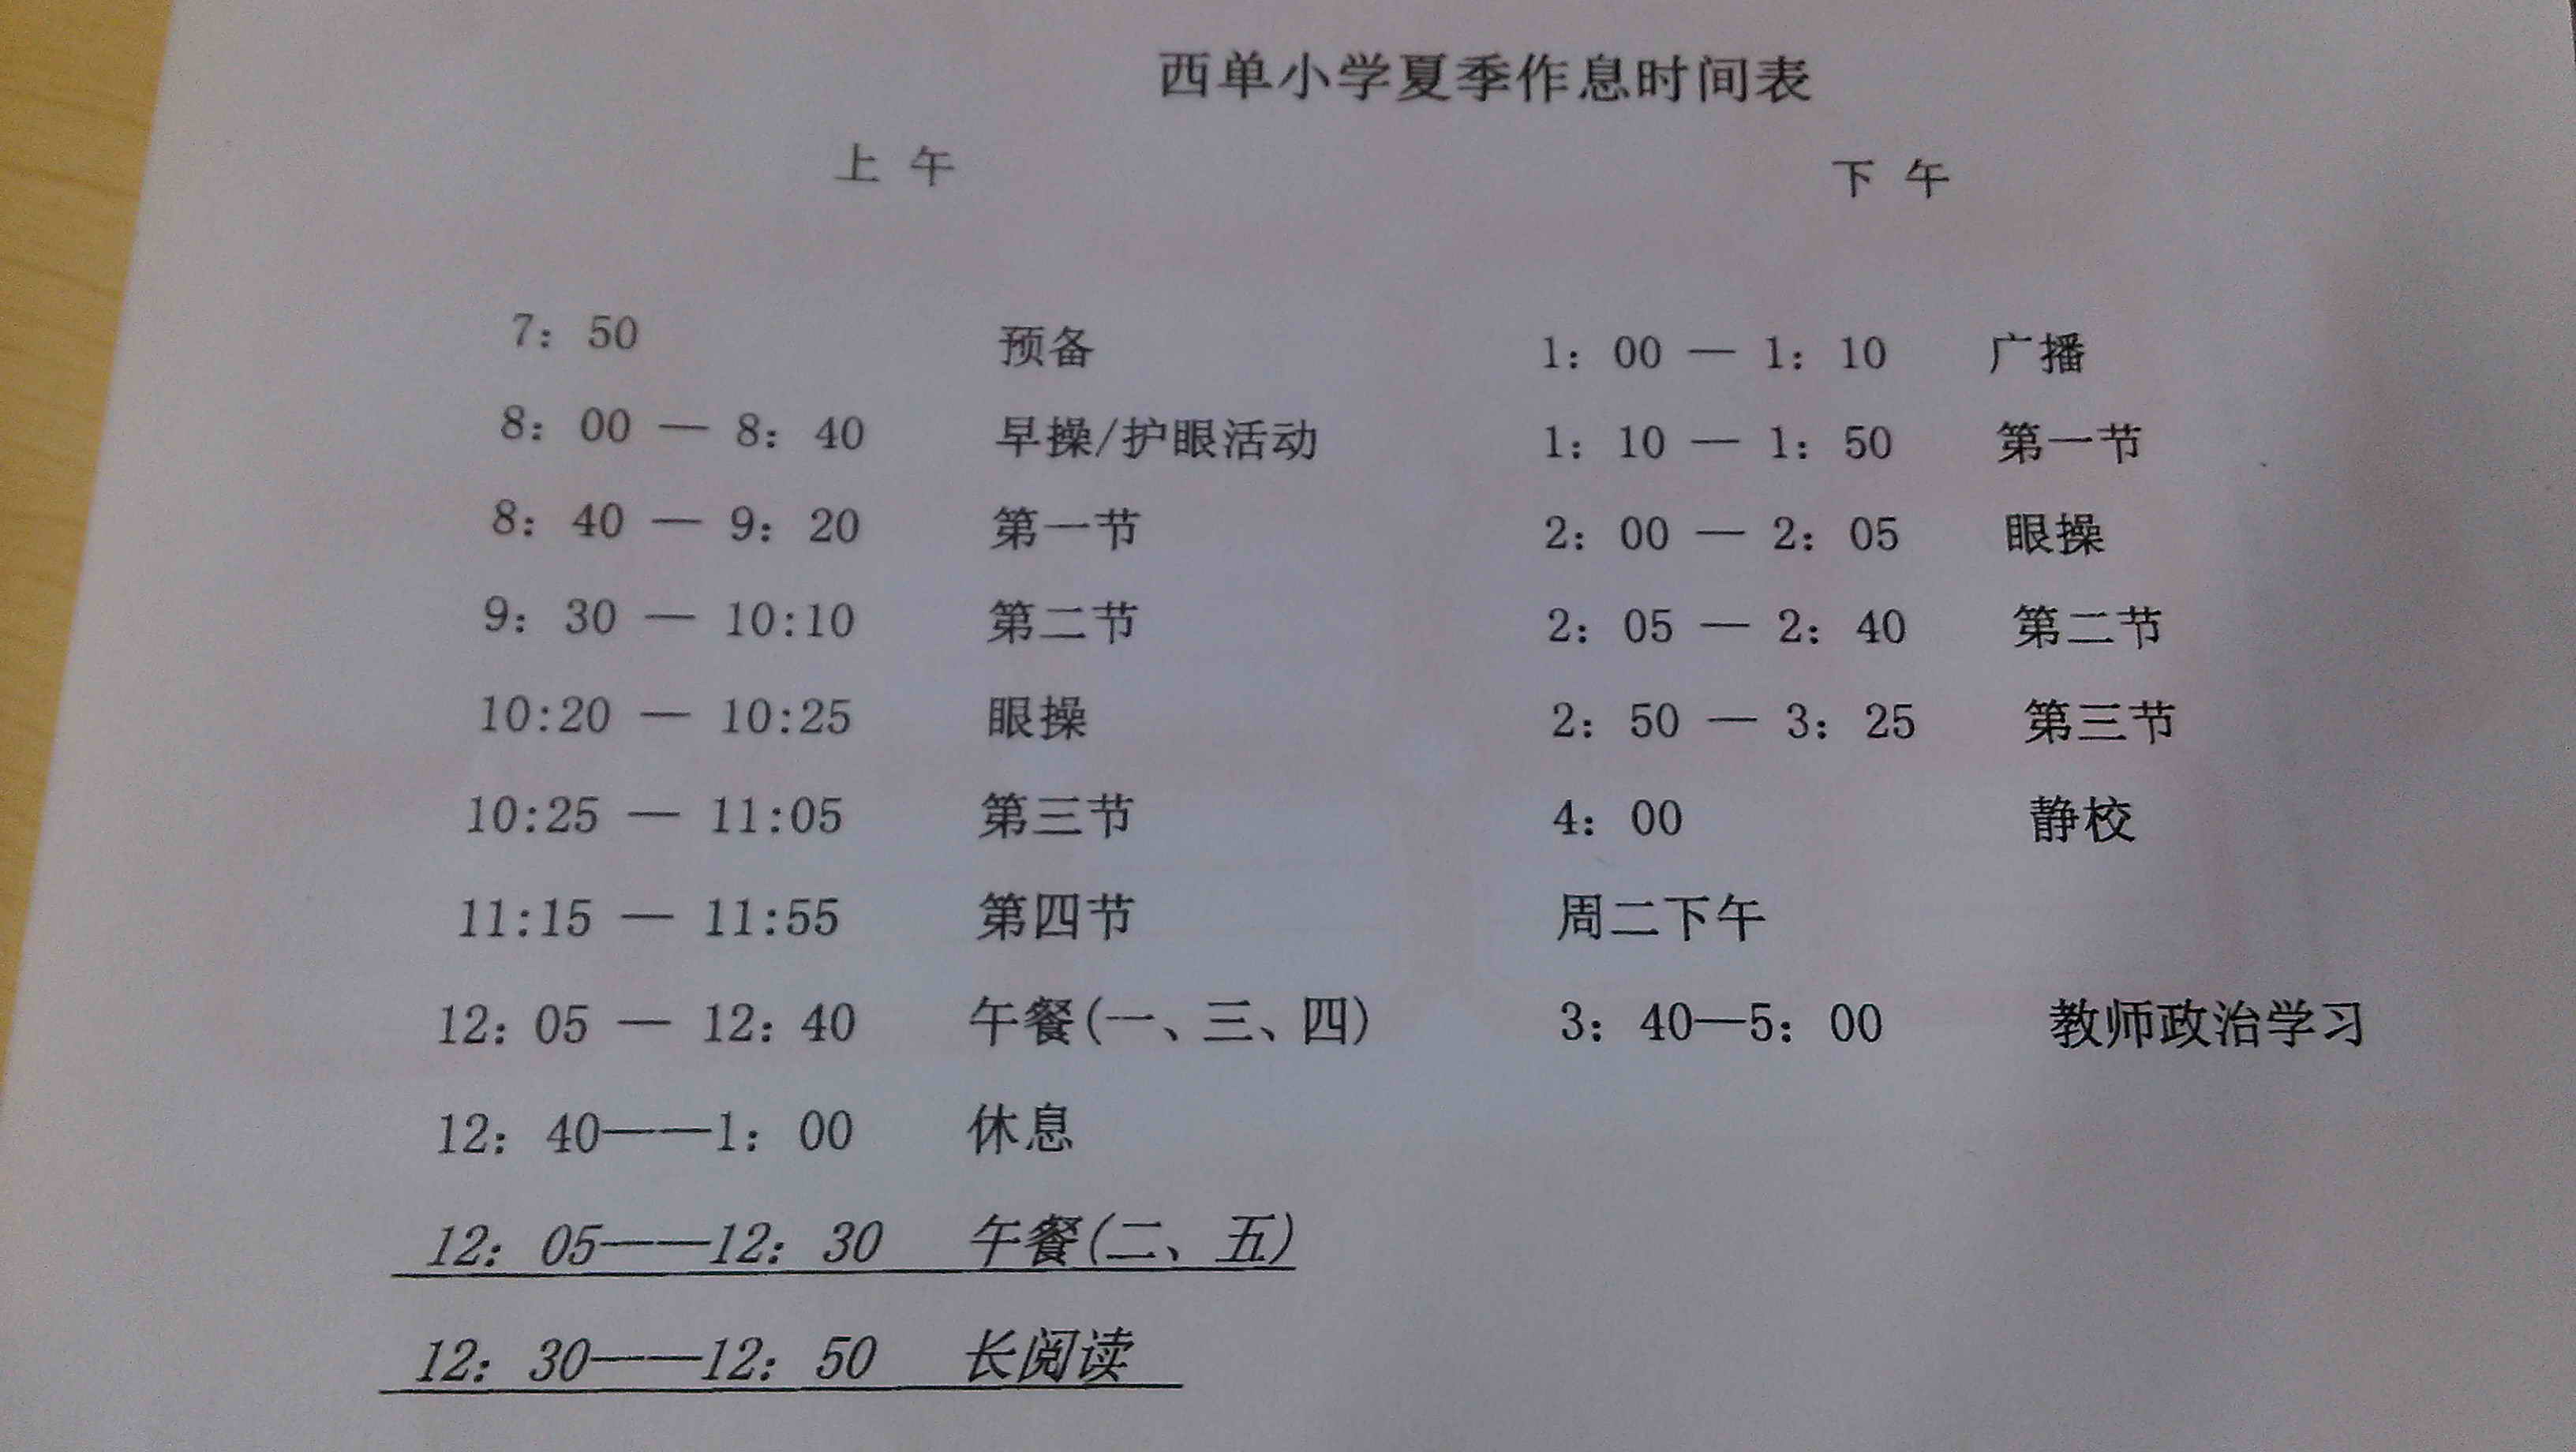 北京市西城区西单小学夏季作息时间表